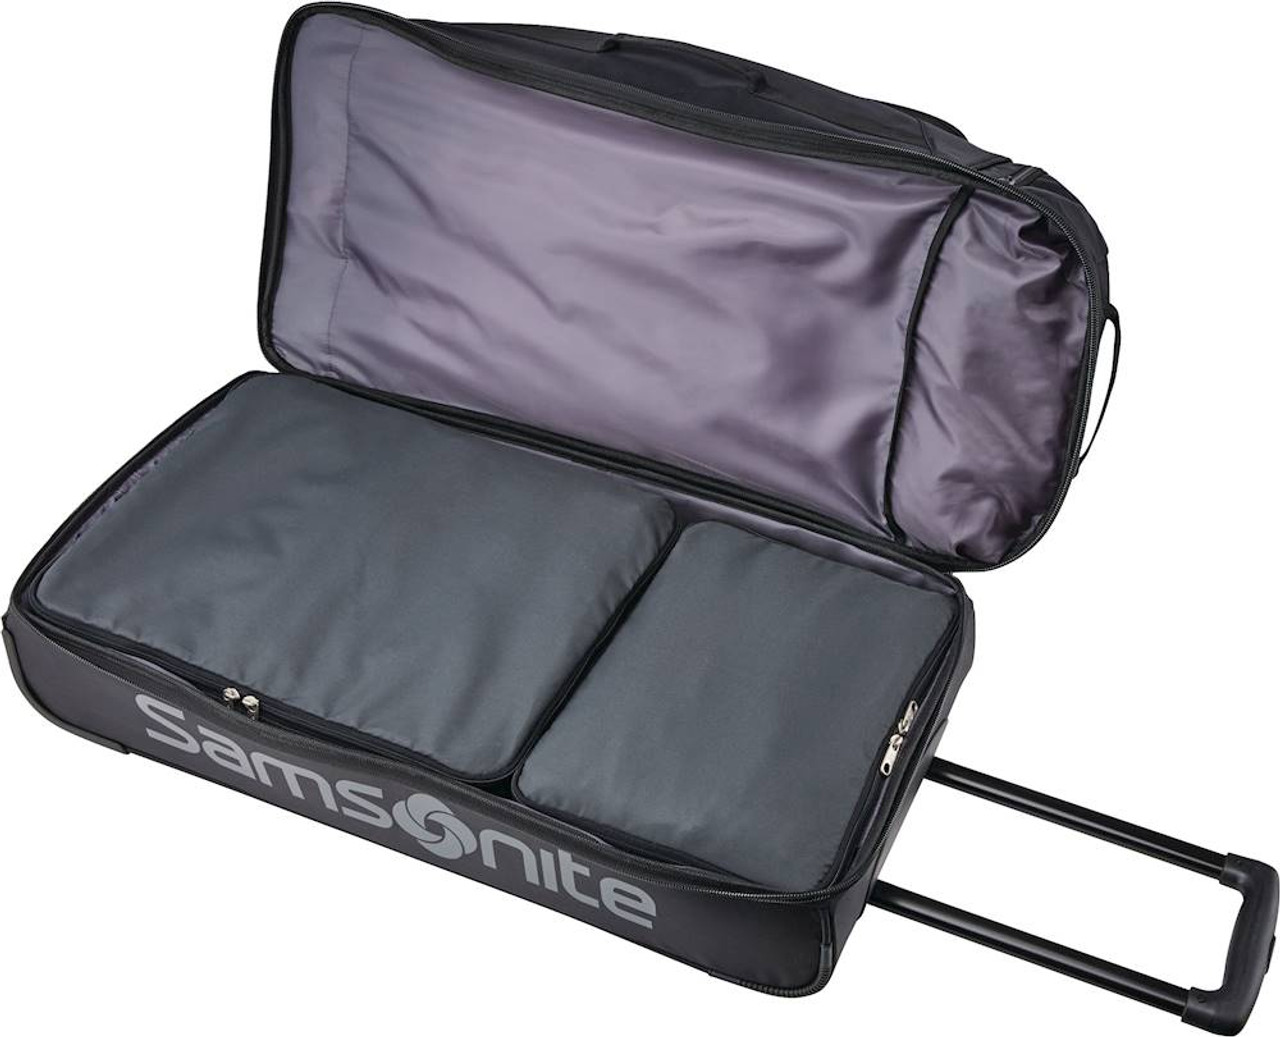 Samsonite - Andante 2 34" Wheeled Duffel Bag - Black